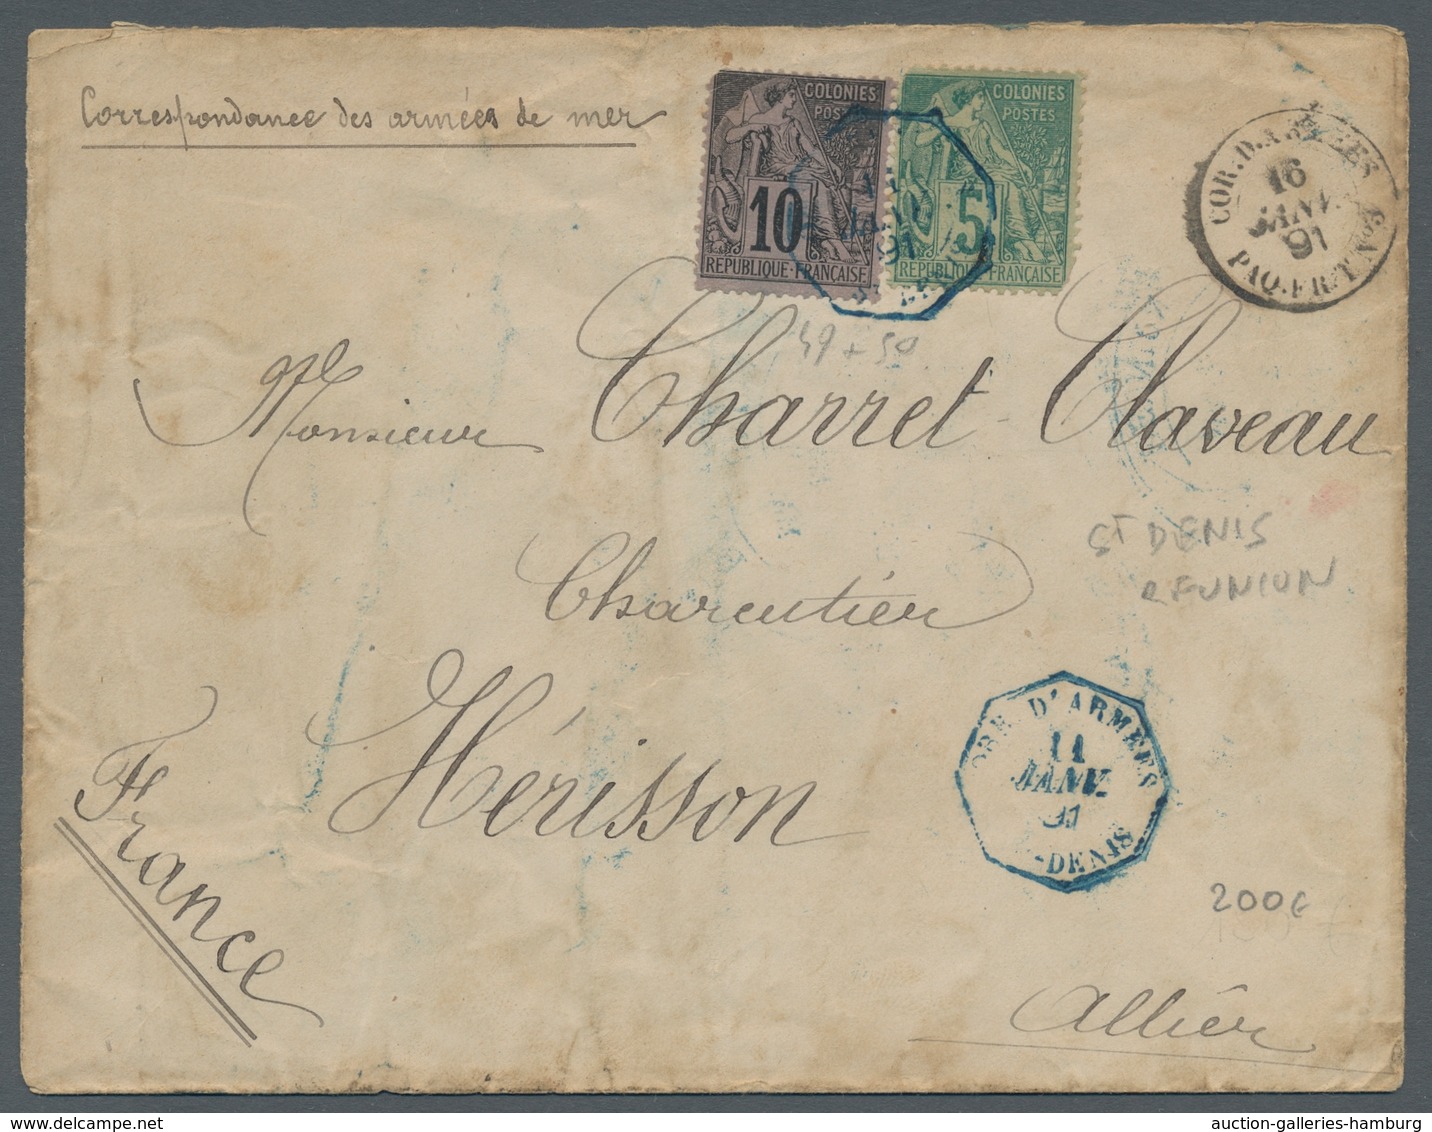 Reunion: 1854-1912, ungemein reichhaltige Sammlung von 190 frankierten Briefen, Karten, Briefvorders